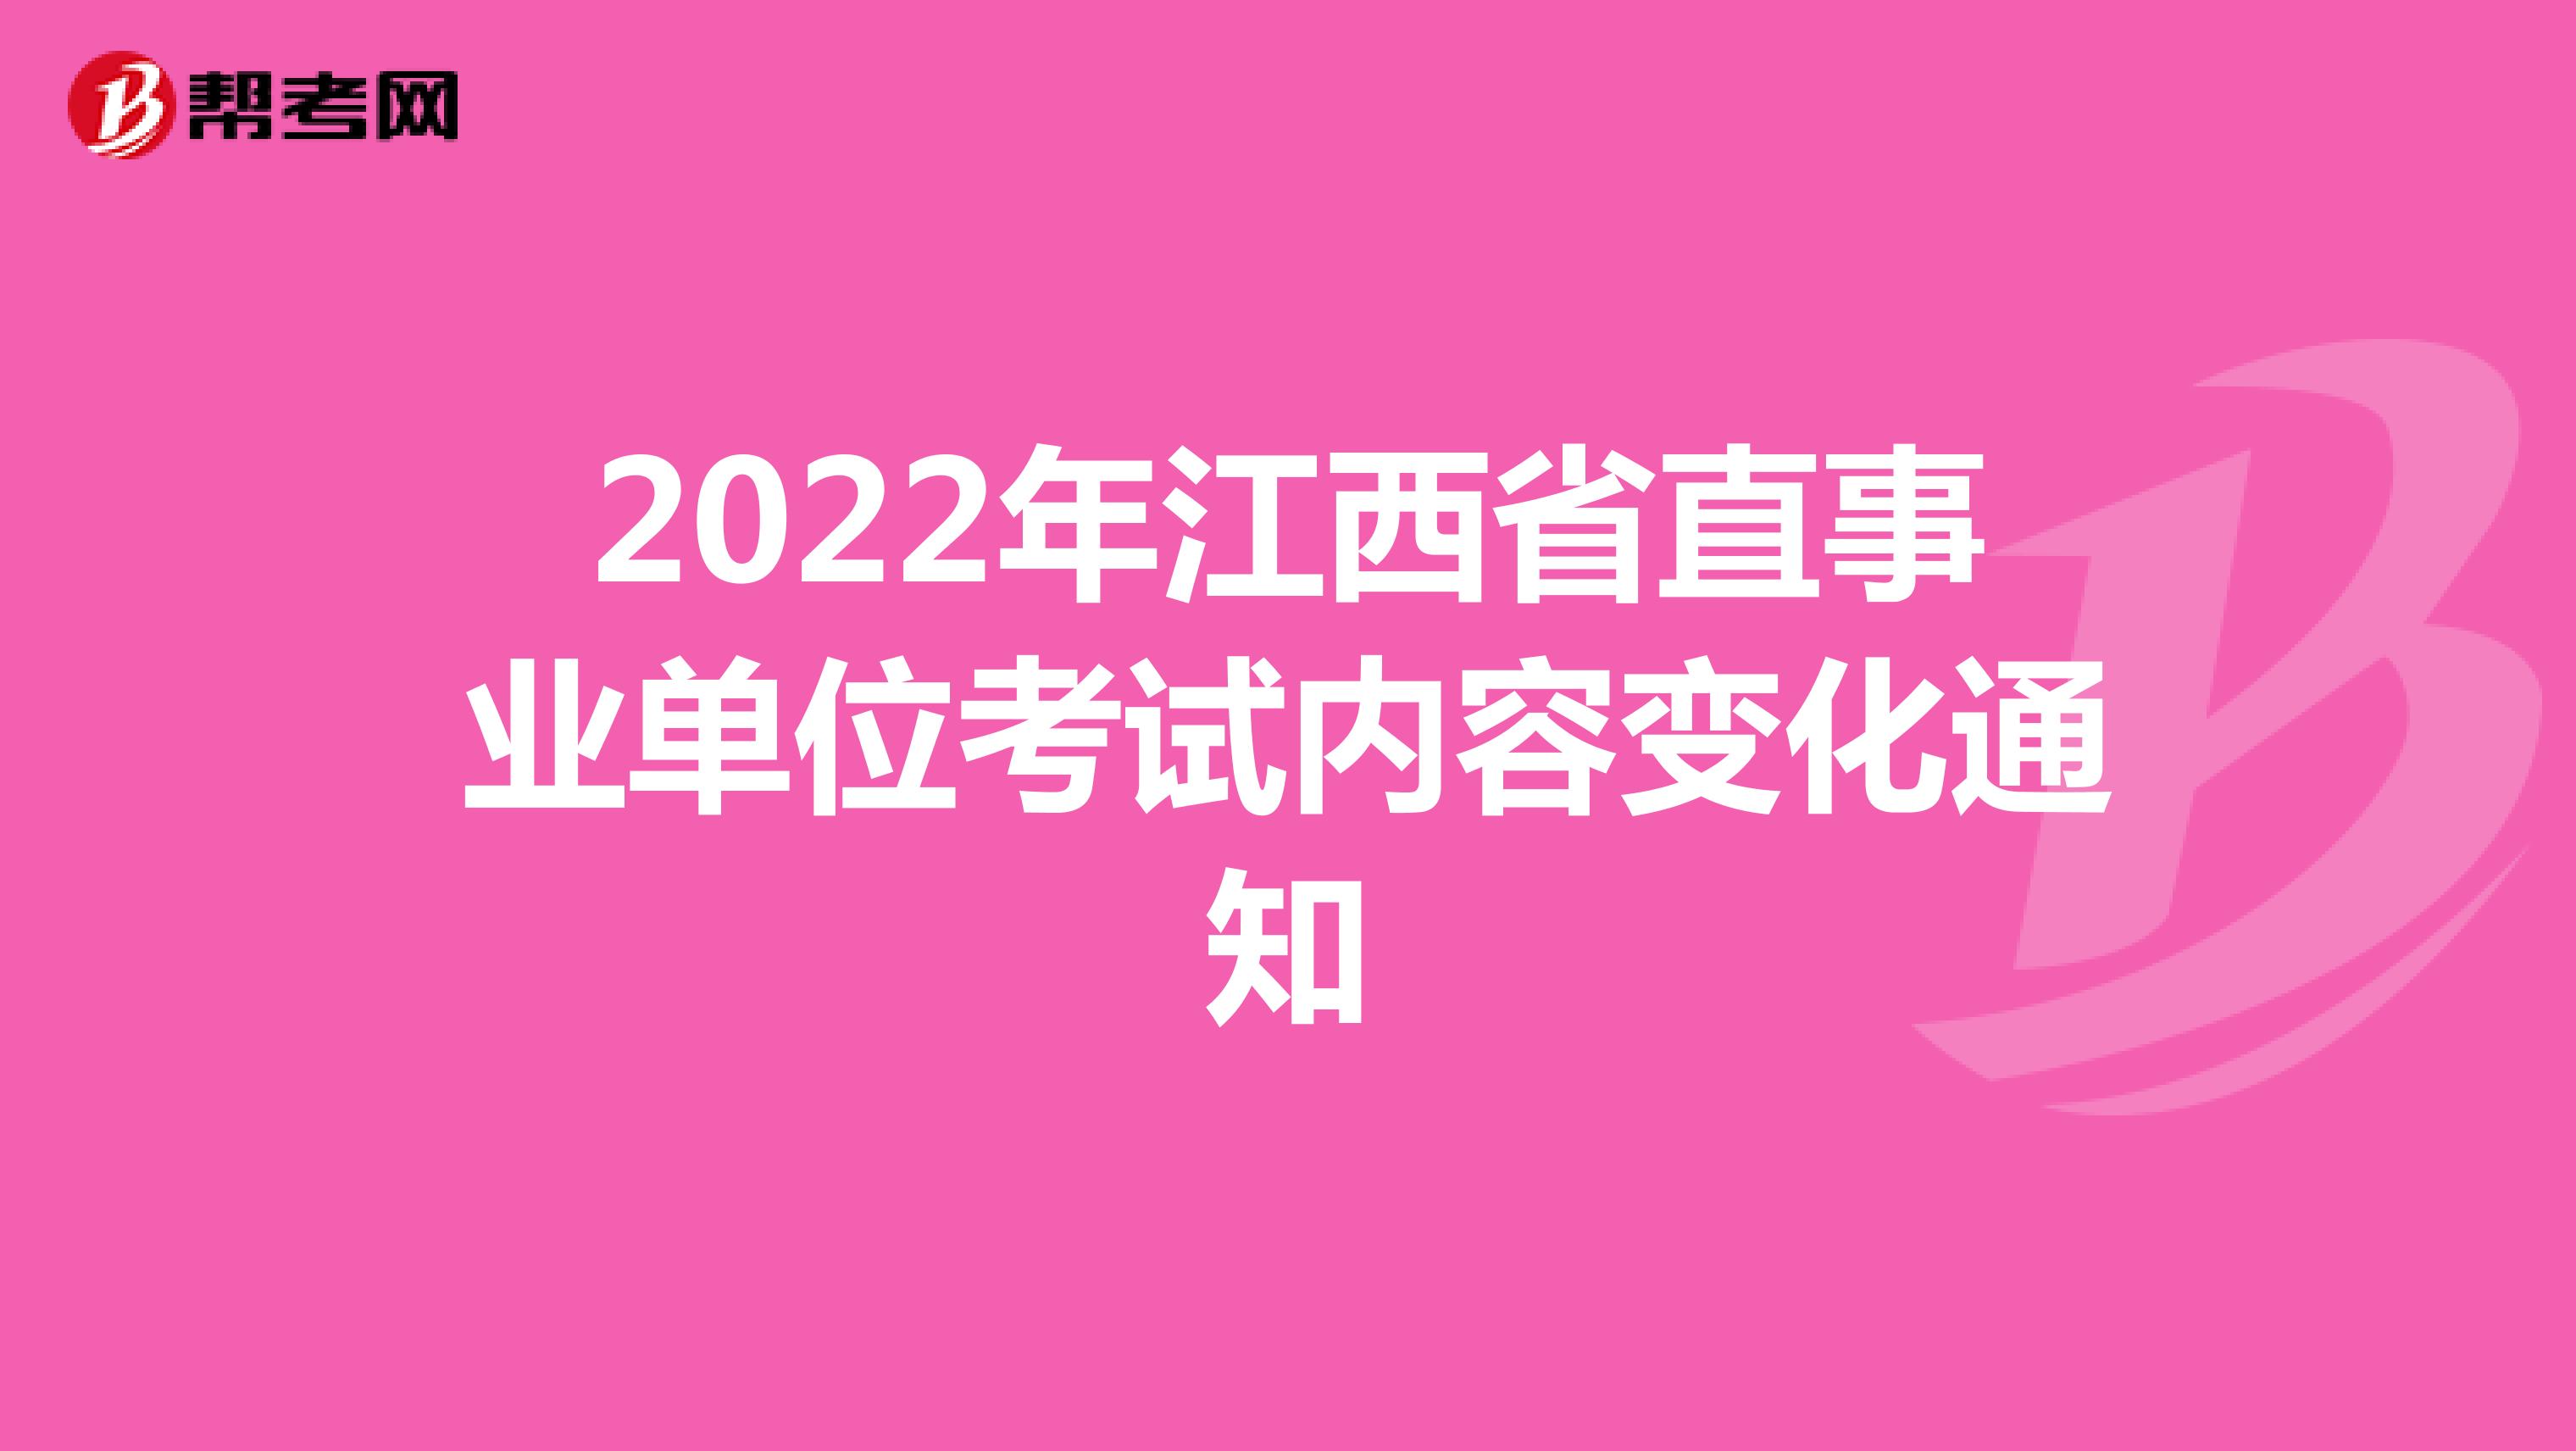 2022年江西省直事业单位考试内容变化通知